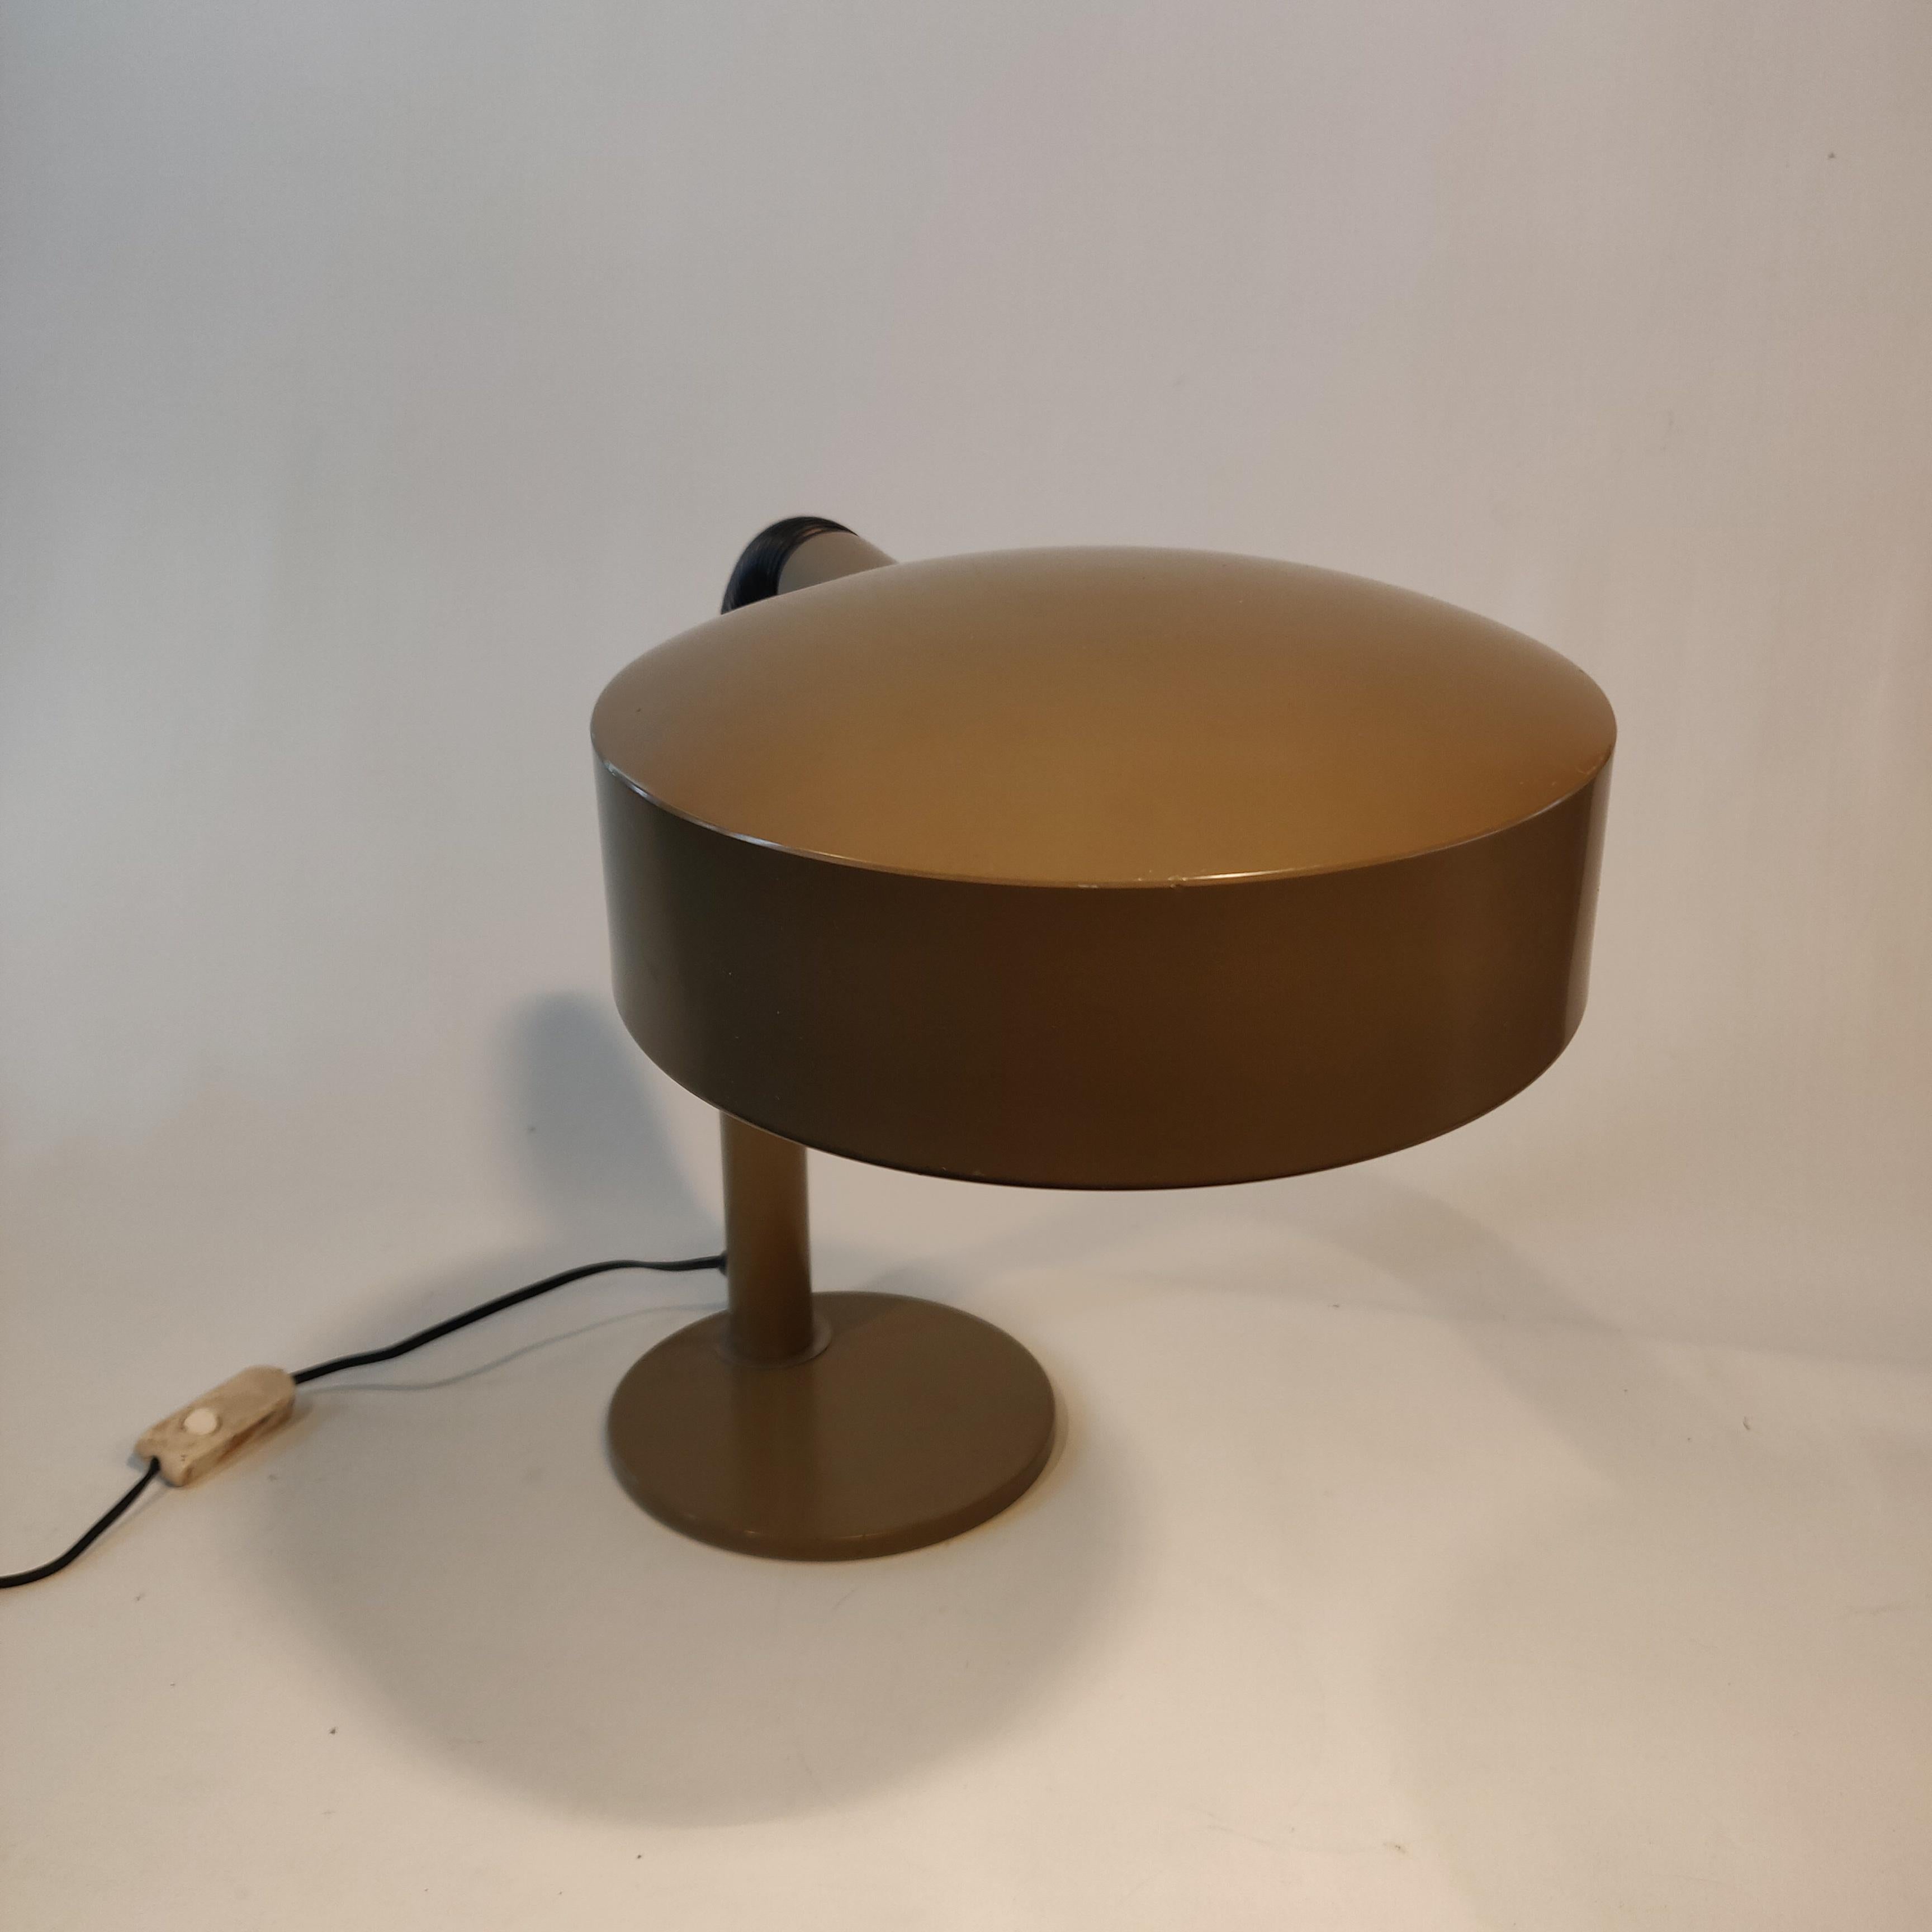 Dutch Design Hala Zeist Holland 1970er Jahre Schwanenhals Schreibtischlampe, genannt Pan Lampe. Flexibler Arm, Farbe taupebraun.

Hala ist eines der ersten Lichtunternehmen der Niederlande, das 1932 in Zeist gegründet wurde und später nach